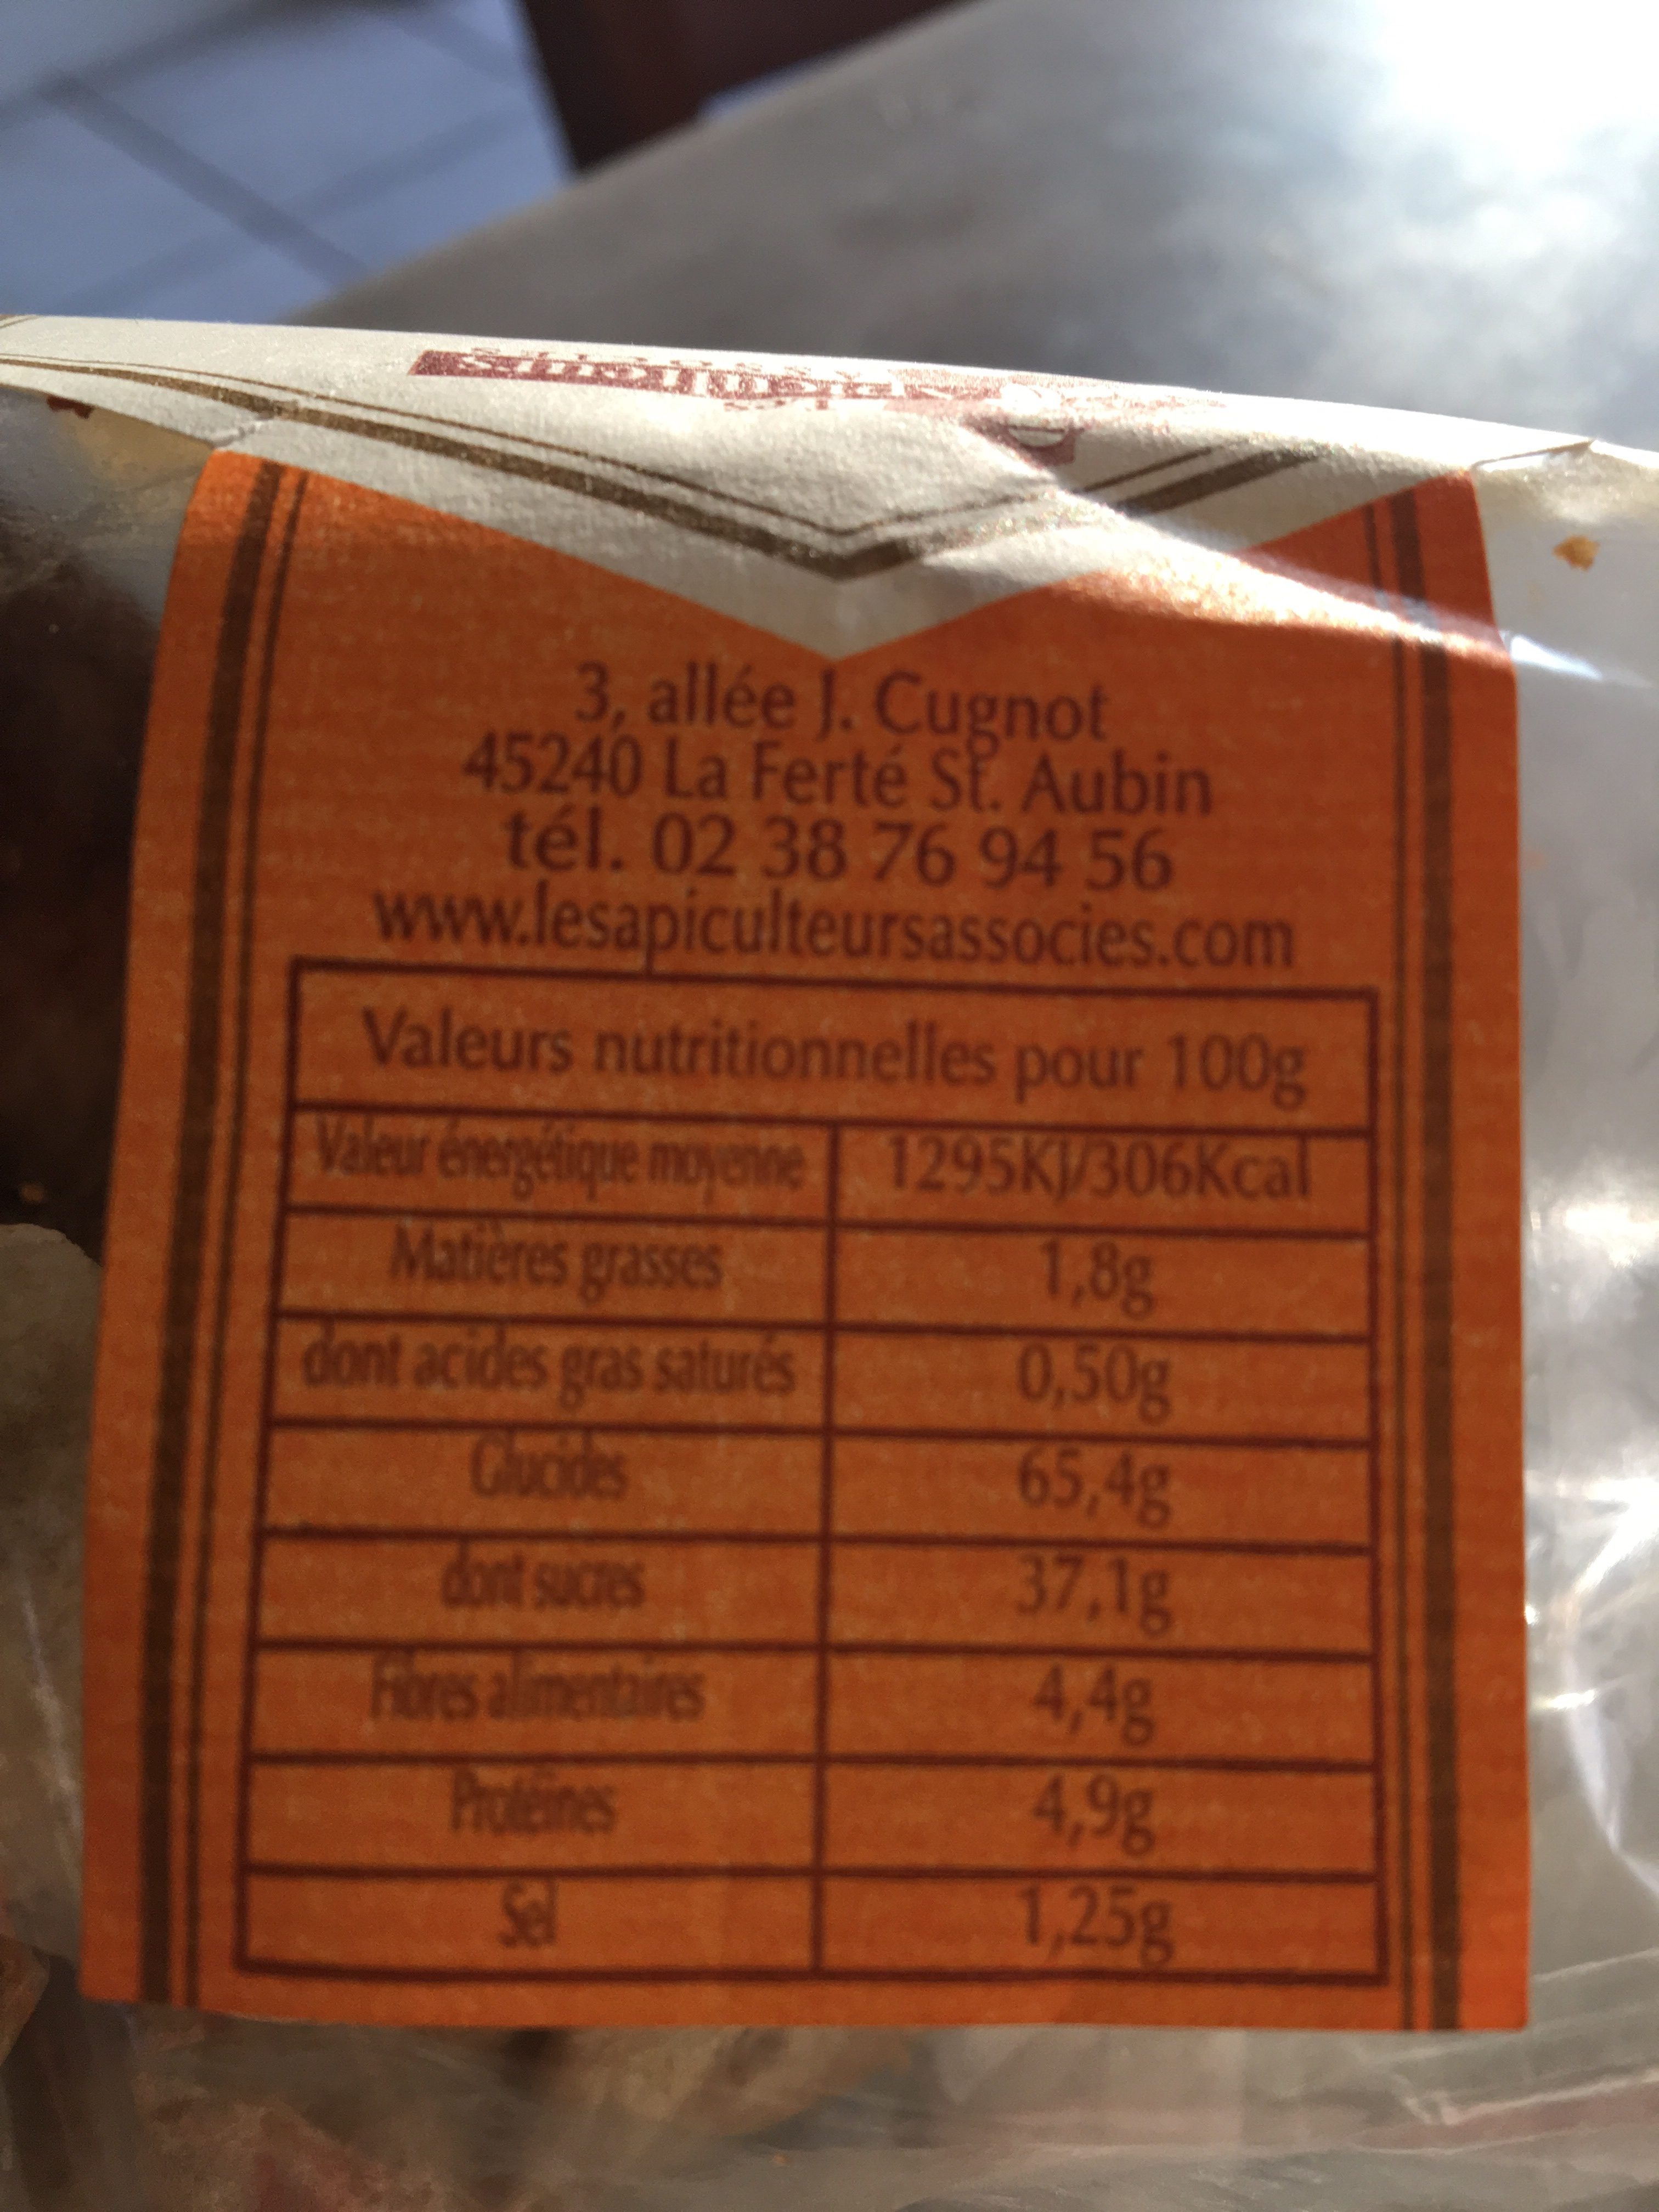 Apiculteurs Associes Pain Epices Orange 330G - Ingredients - fr